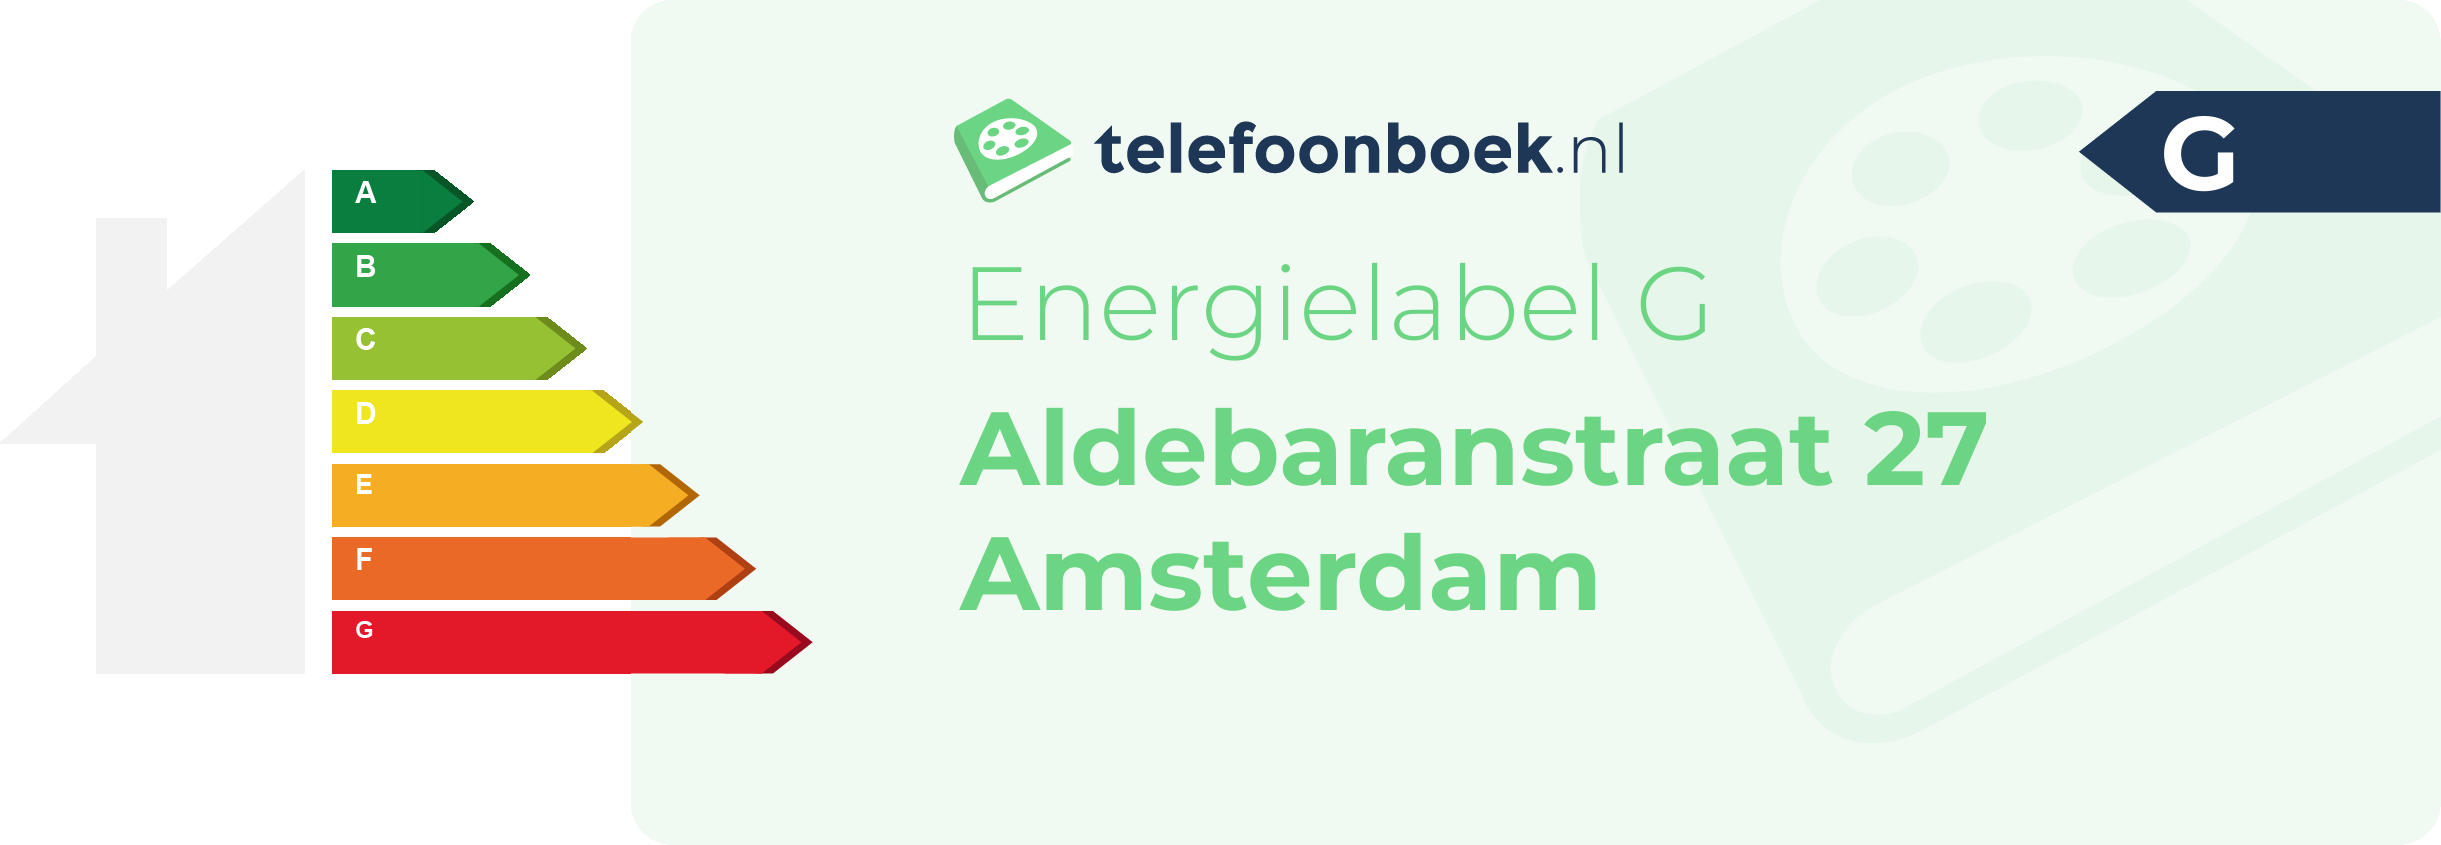 Energielabel Aldebaranstraat 27 Amsterdam